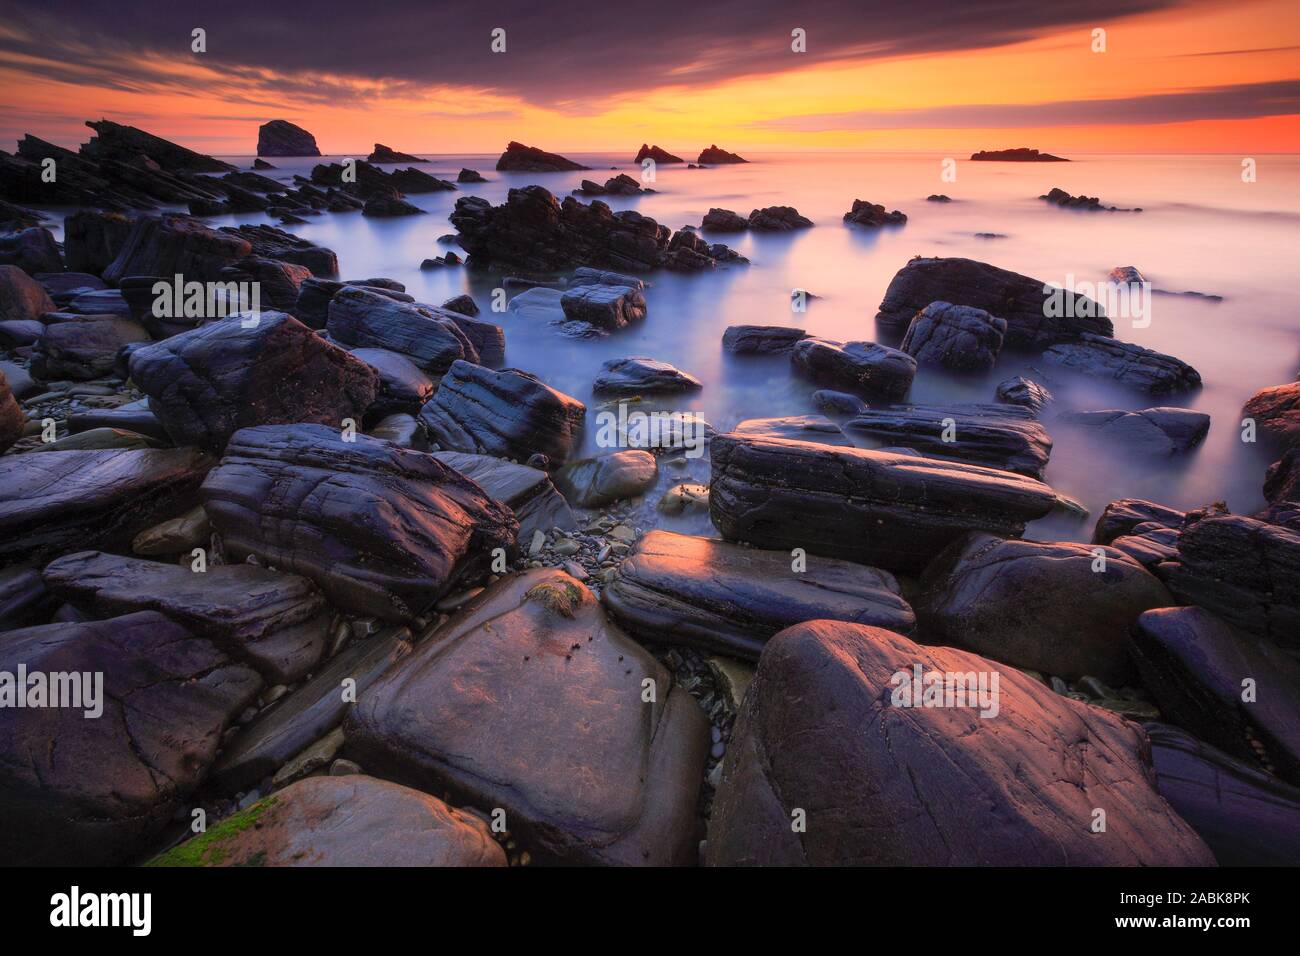 Playa rocosa (Balnakeil Bay) en la costa escocesa cerca de Durness. Escocia Foto de stock